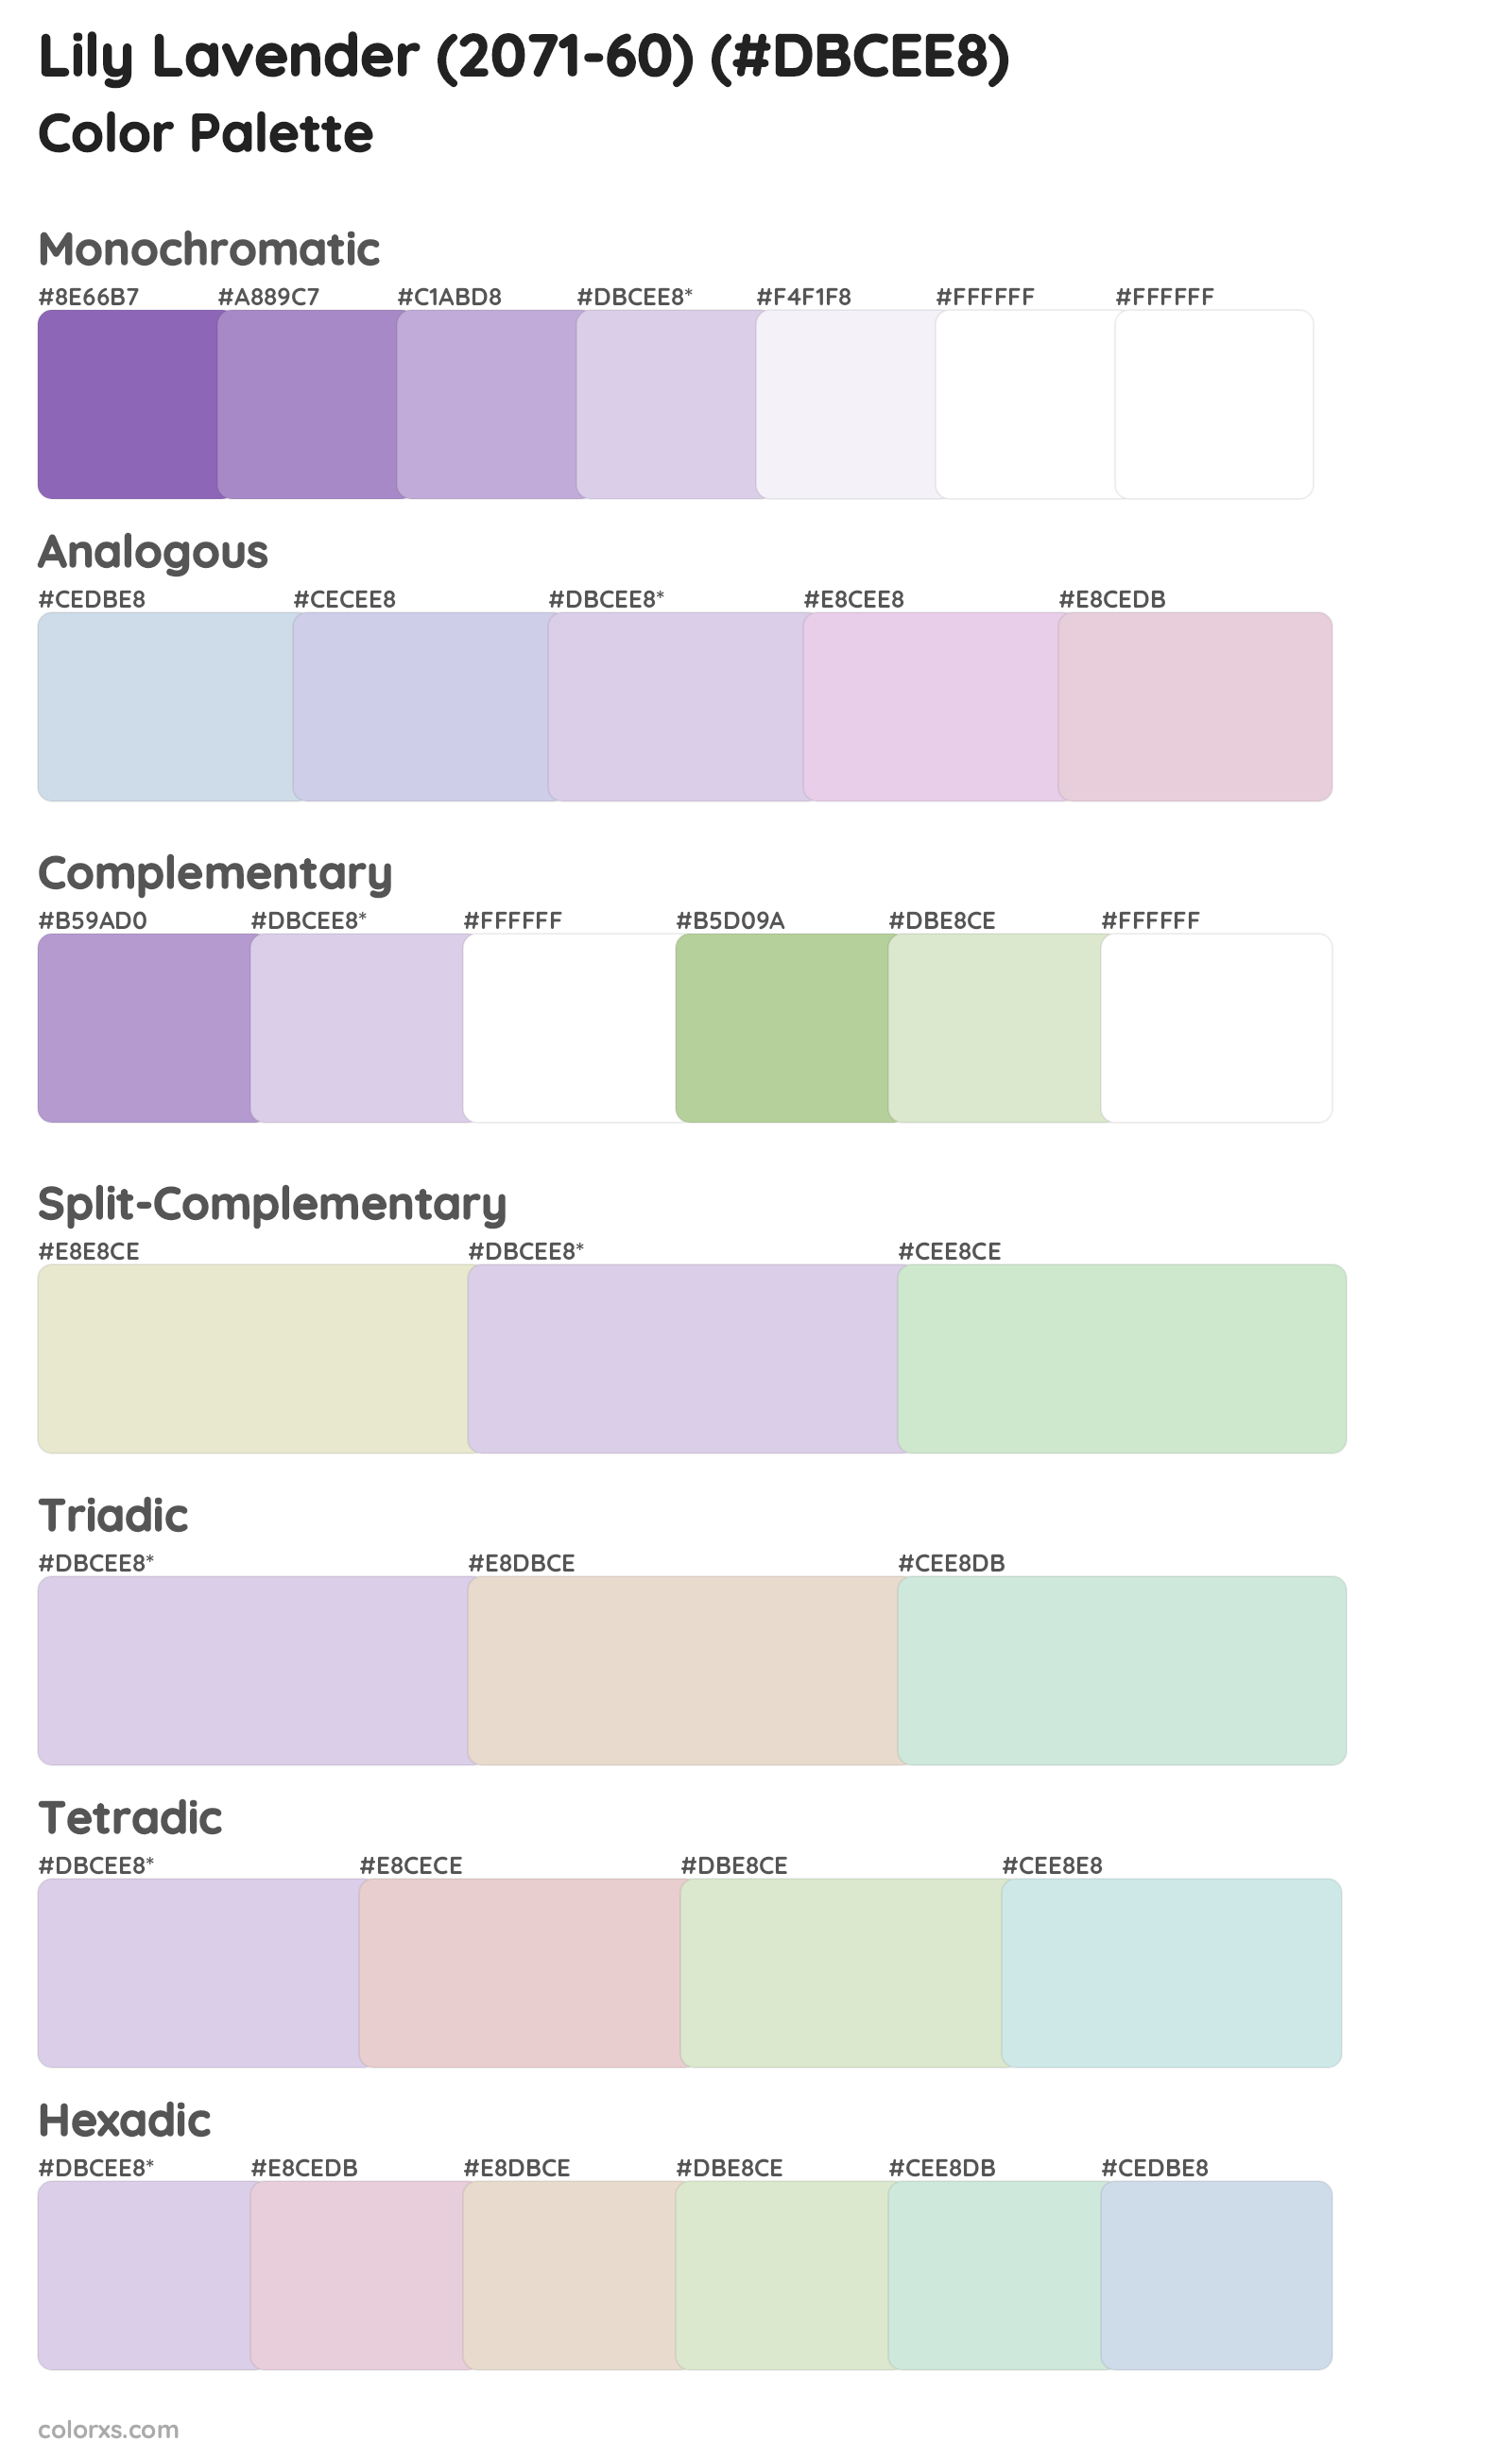 Lily Lavender (2071-60) Color Scheme Palettes